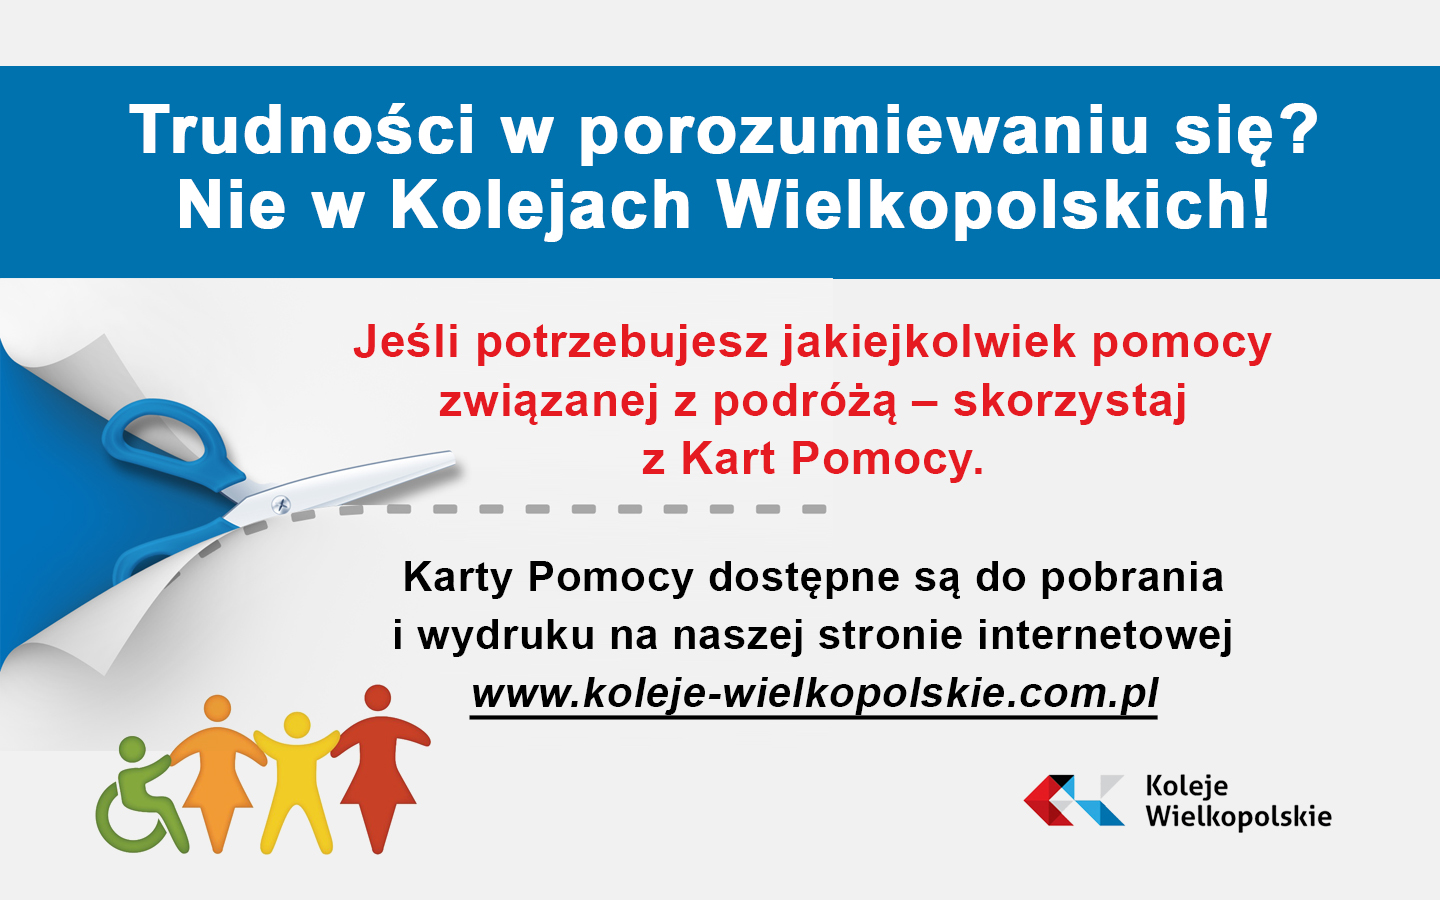 Karta pomocy z firmy Koleje Wielkopolskie